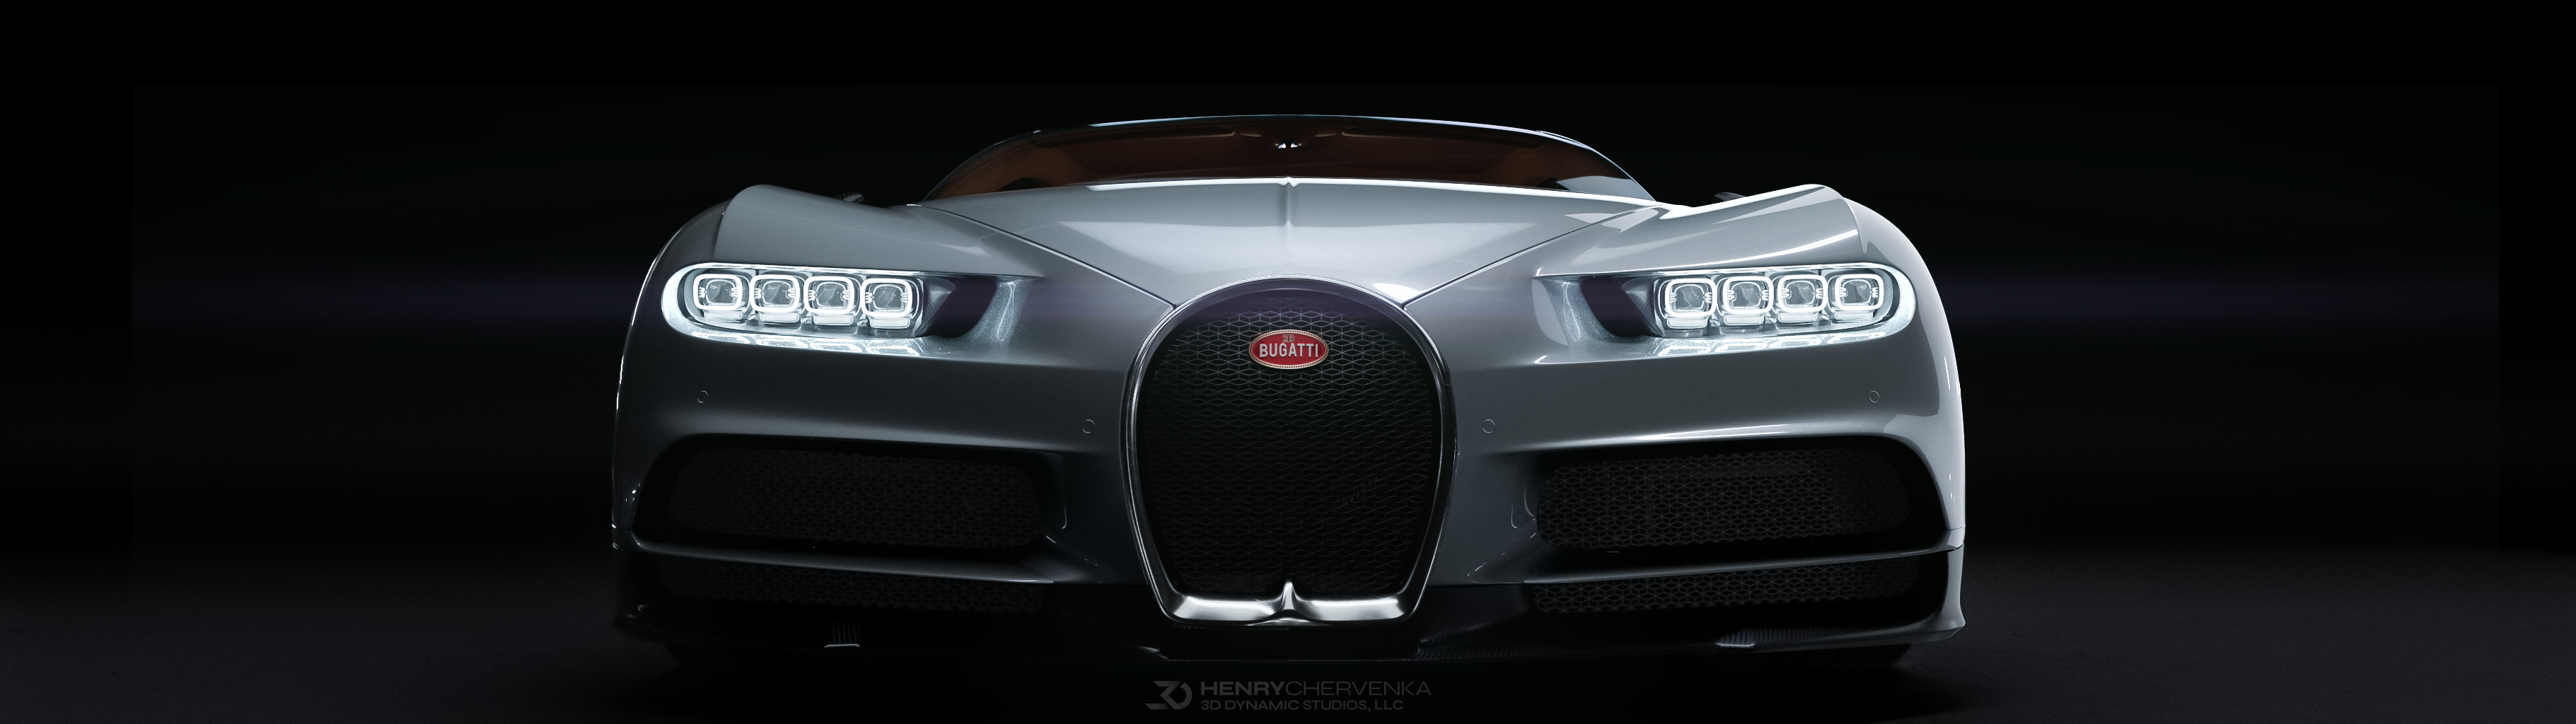 Siêu xe Bugatti Chiron là một trong những chiếc xe đắt giá và đẳng cấp nhất thế giới. Chỉ bằng một cái nhìn vào hình ảnh, bạn sẽ cảm nhận được sự hoàn hảo đến từng chi tiết của siêu xe này. Hãy đến và chiêm ngưỡng hình ảnh Bugatti Chiron để tận hưởng trải nghiệm tuyệt vời nhất.